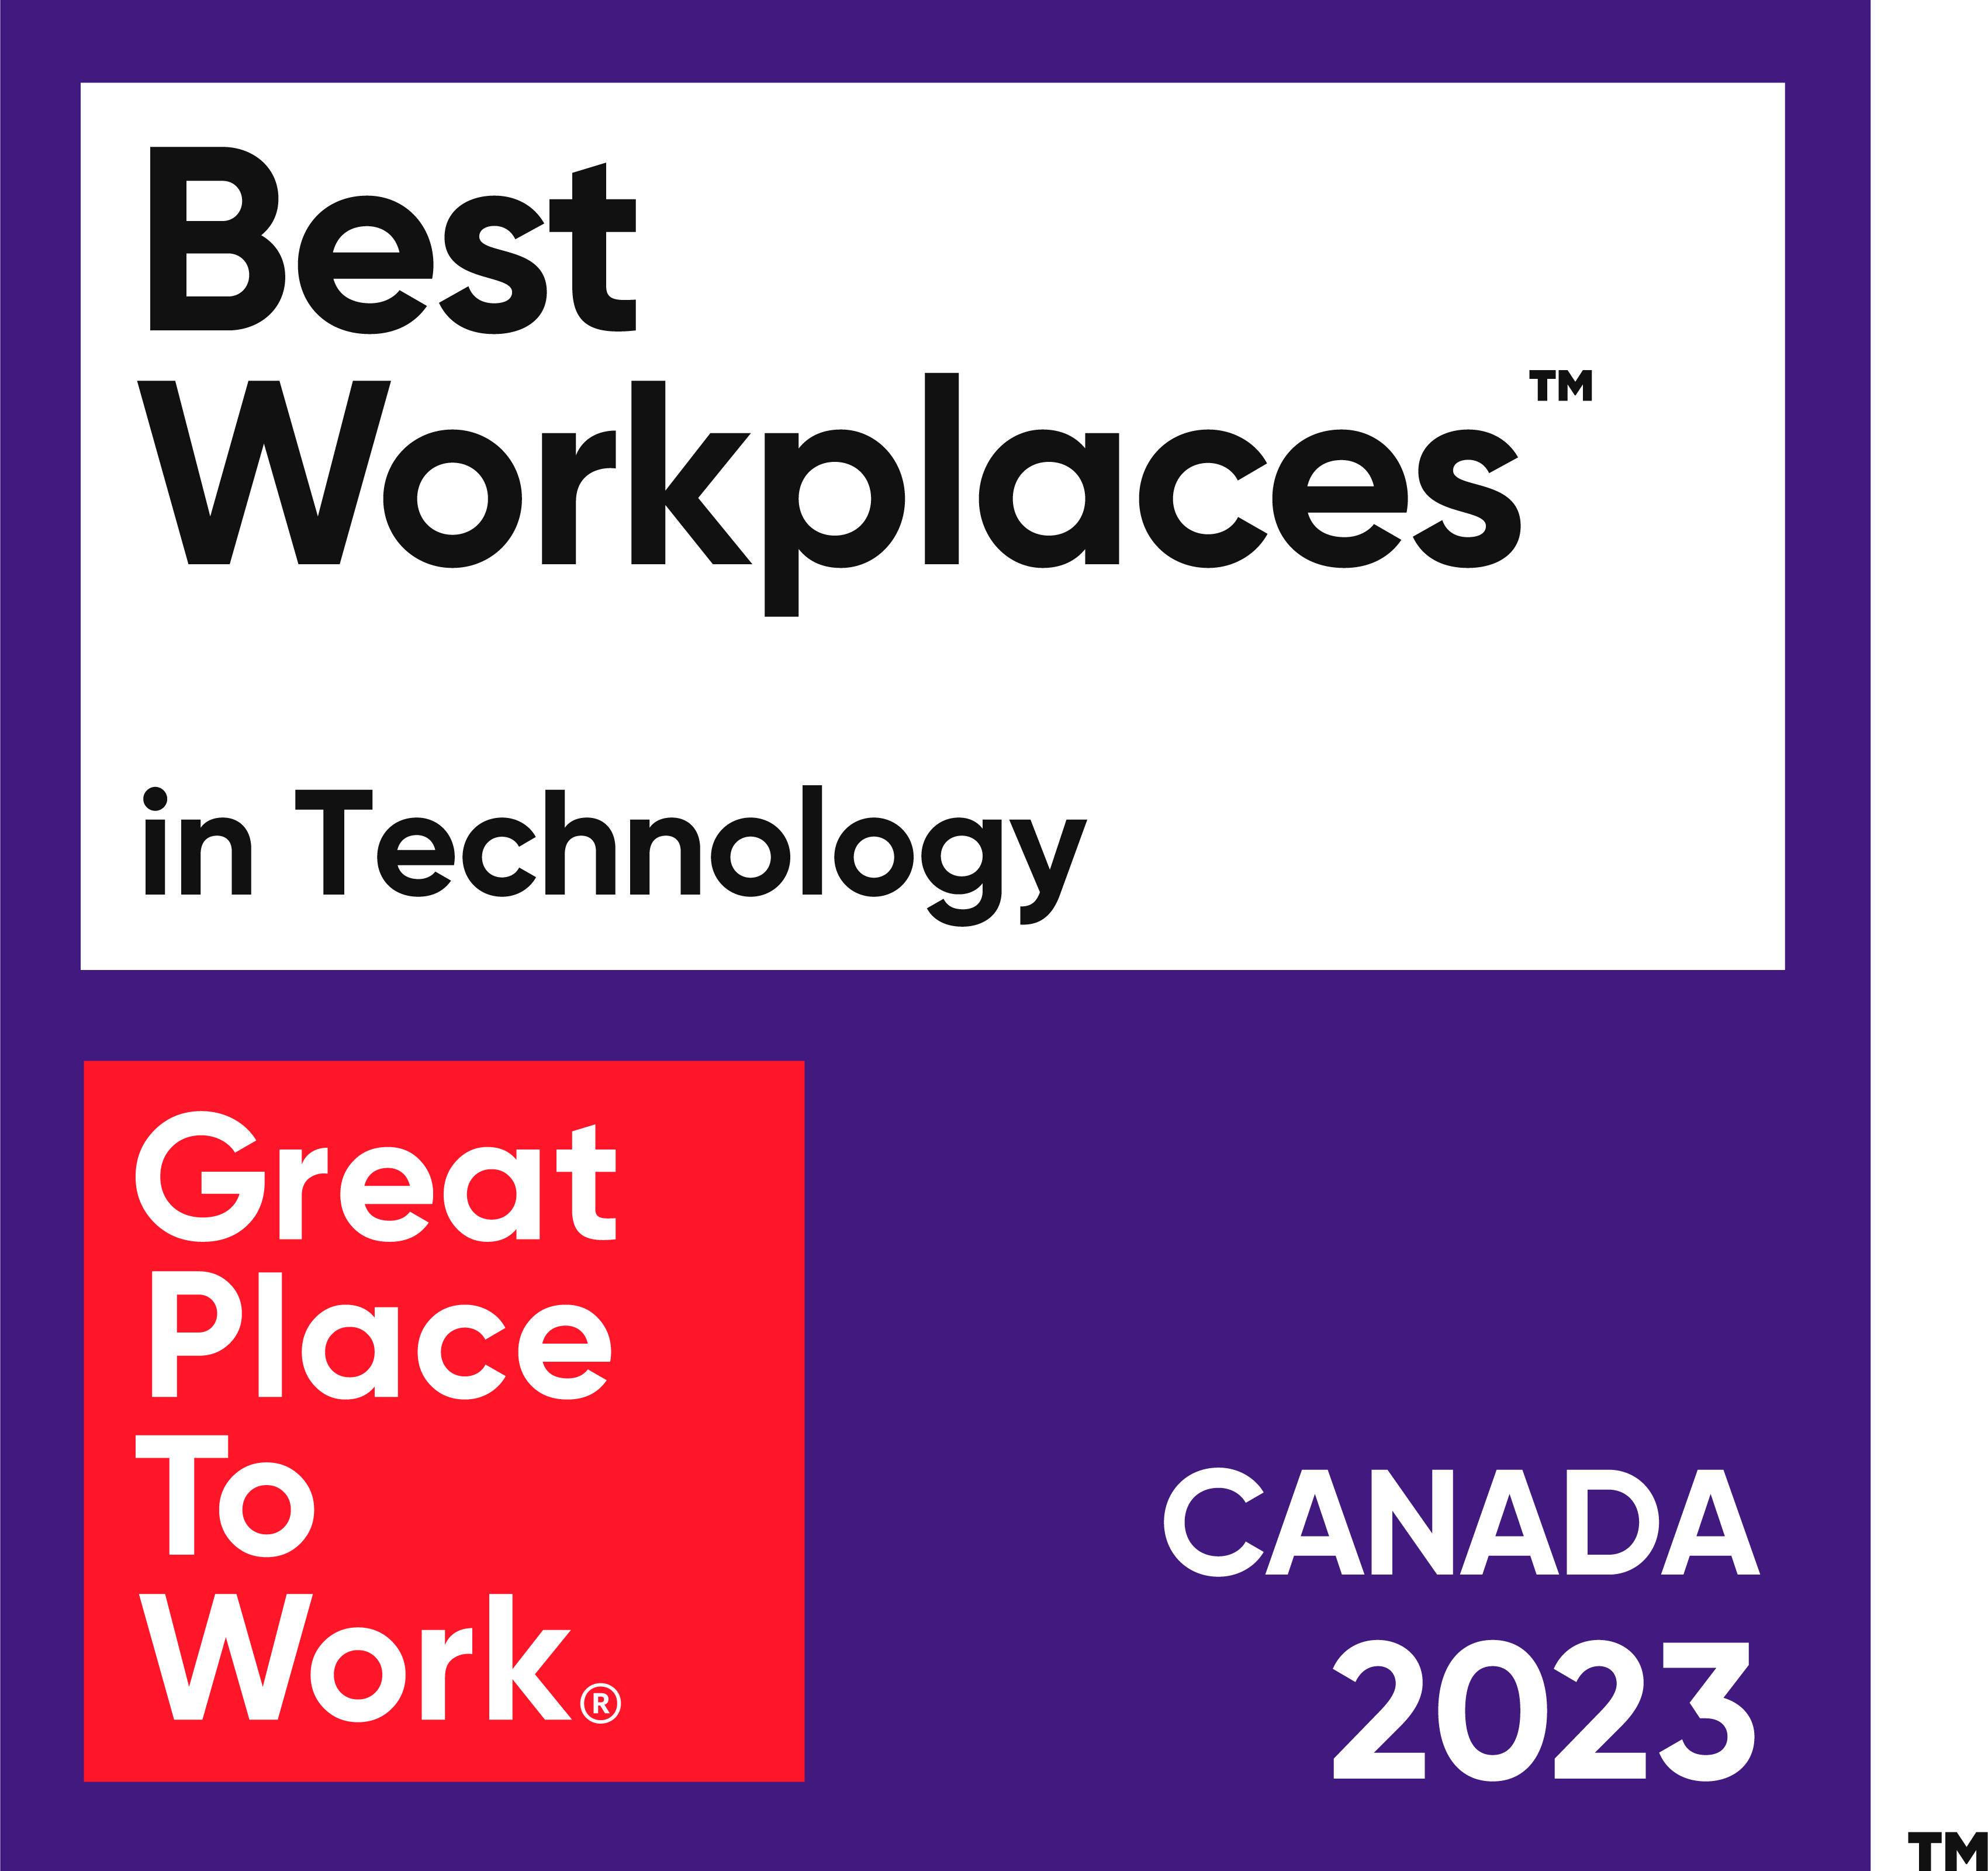 Glassdoor Best Places to Work 2023